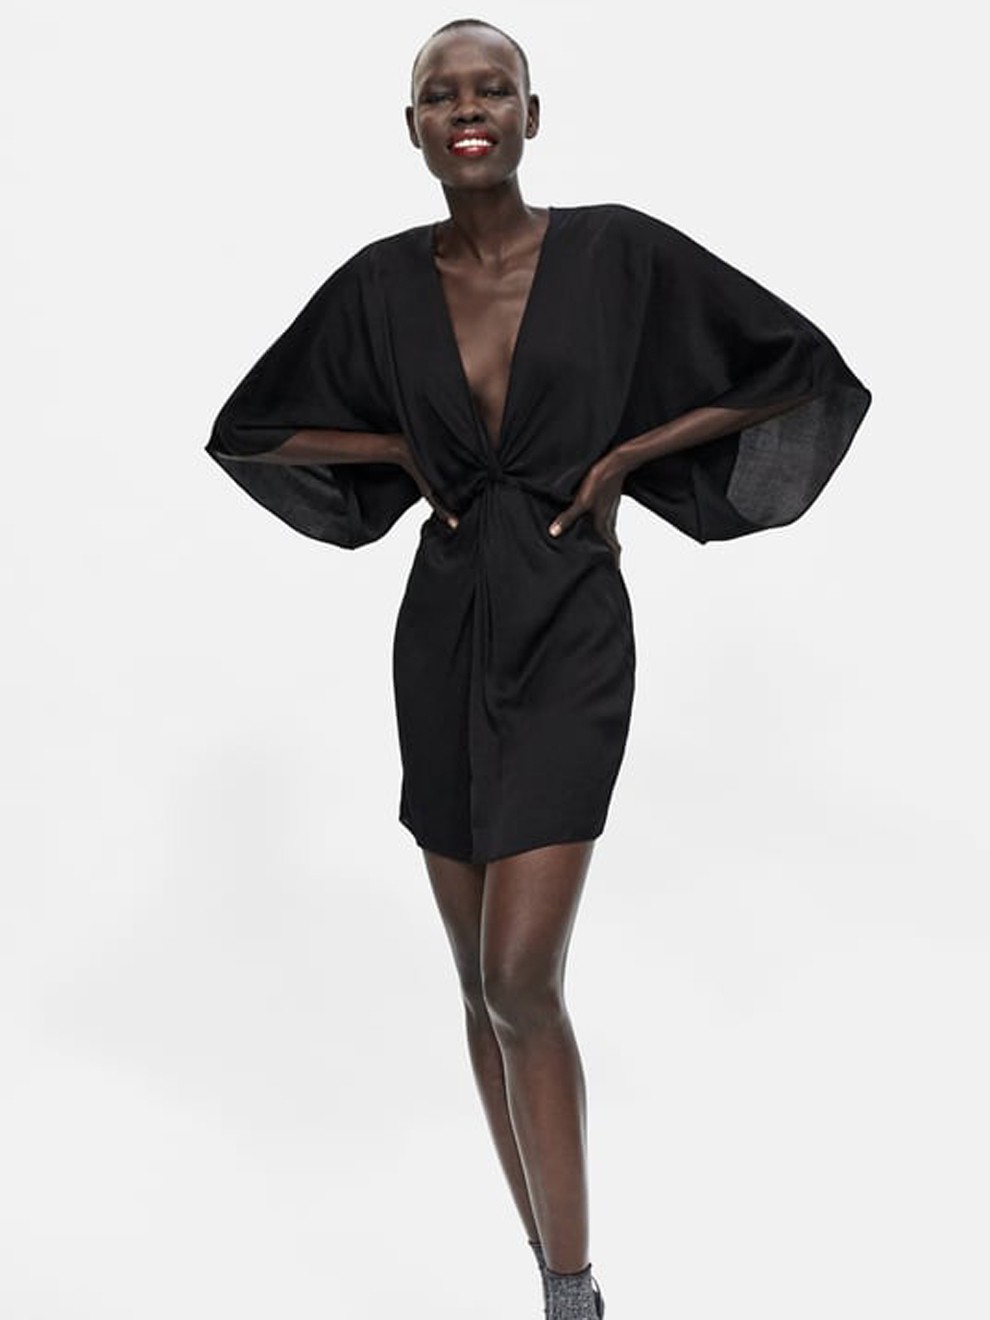 las más sexys: vestido negro corto de Zara